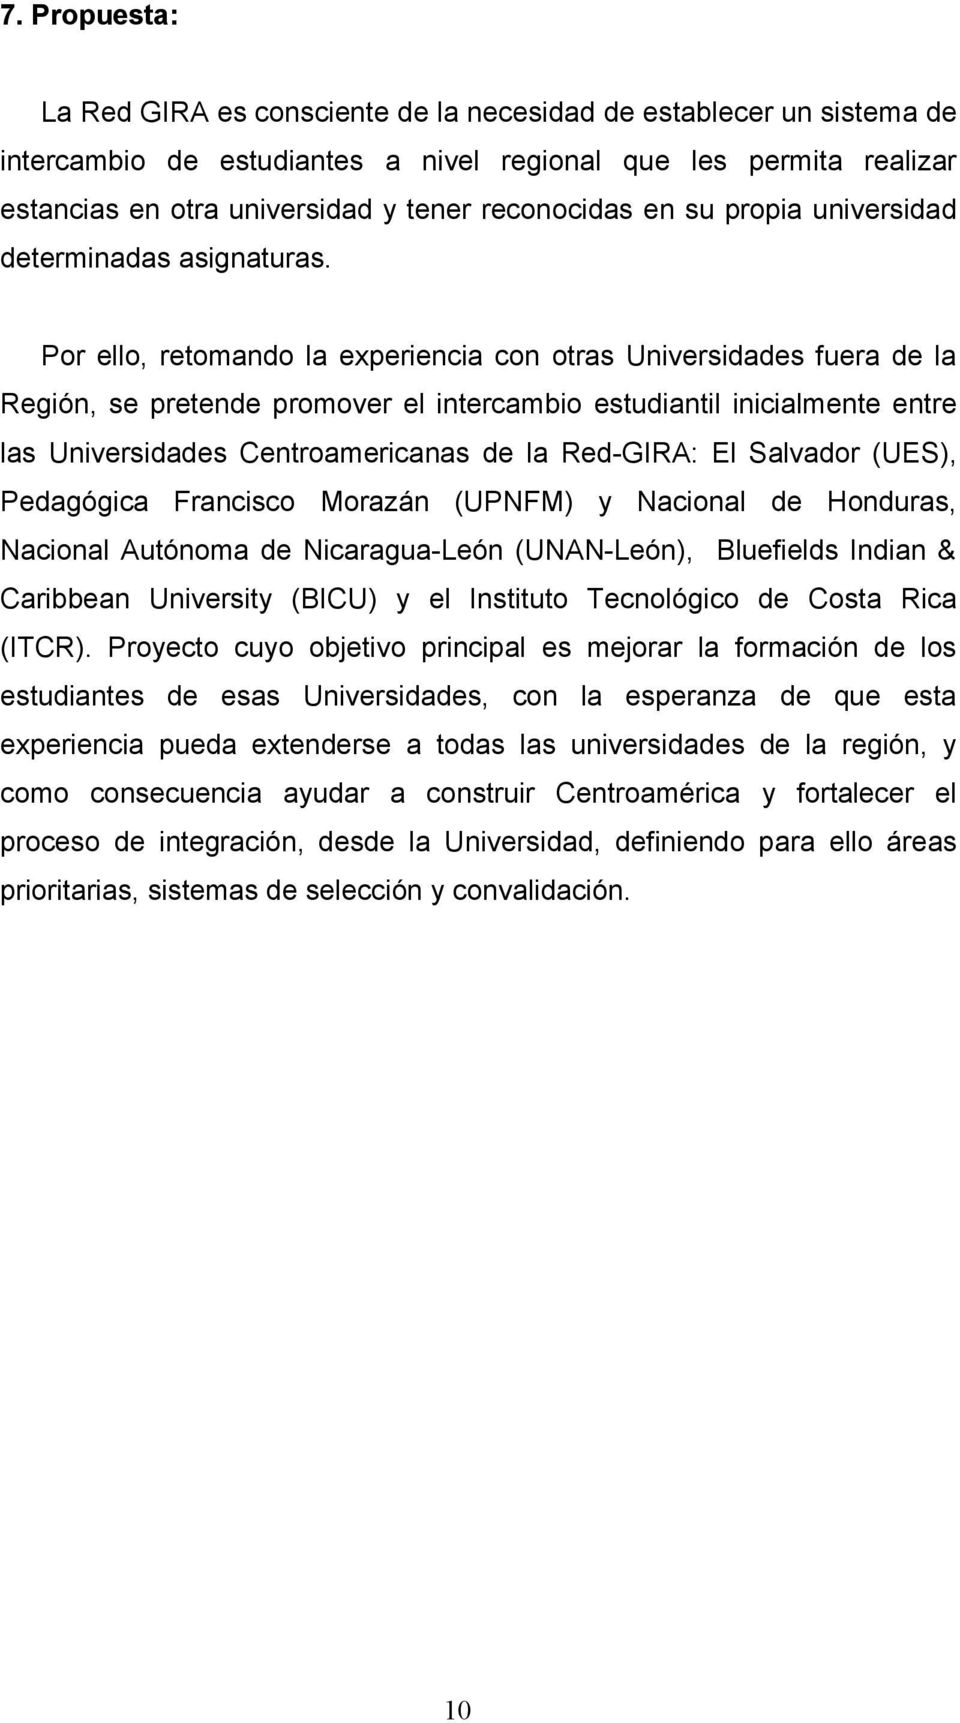 Por ello, retomando la experiencia con otras Universidades fuera de la Región, se pretende promover el intercambio estudiantil inicialmente entre las Universidades Centroamericanas de la Red-GIRA: El